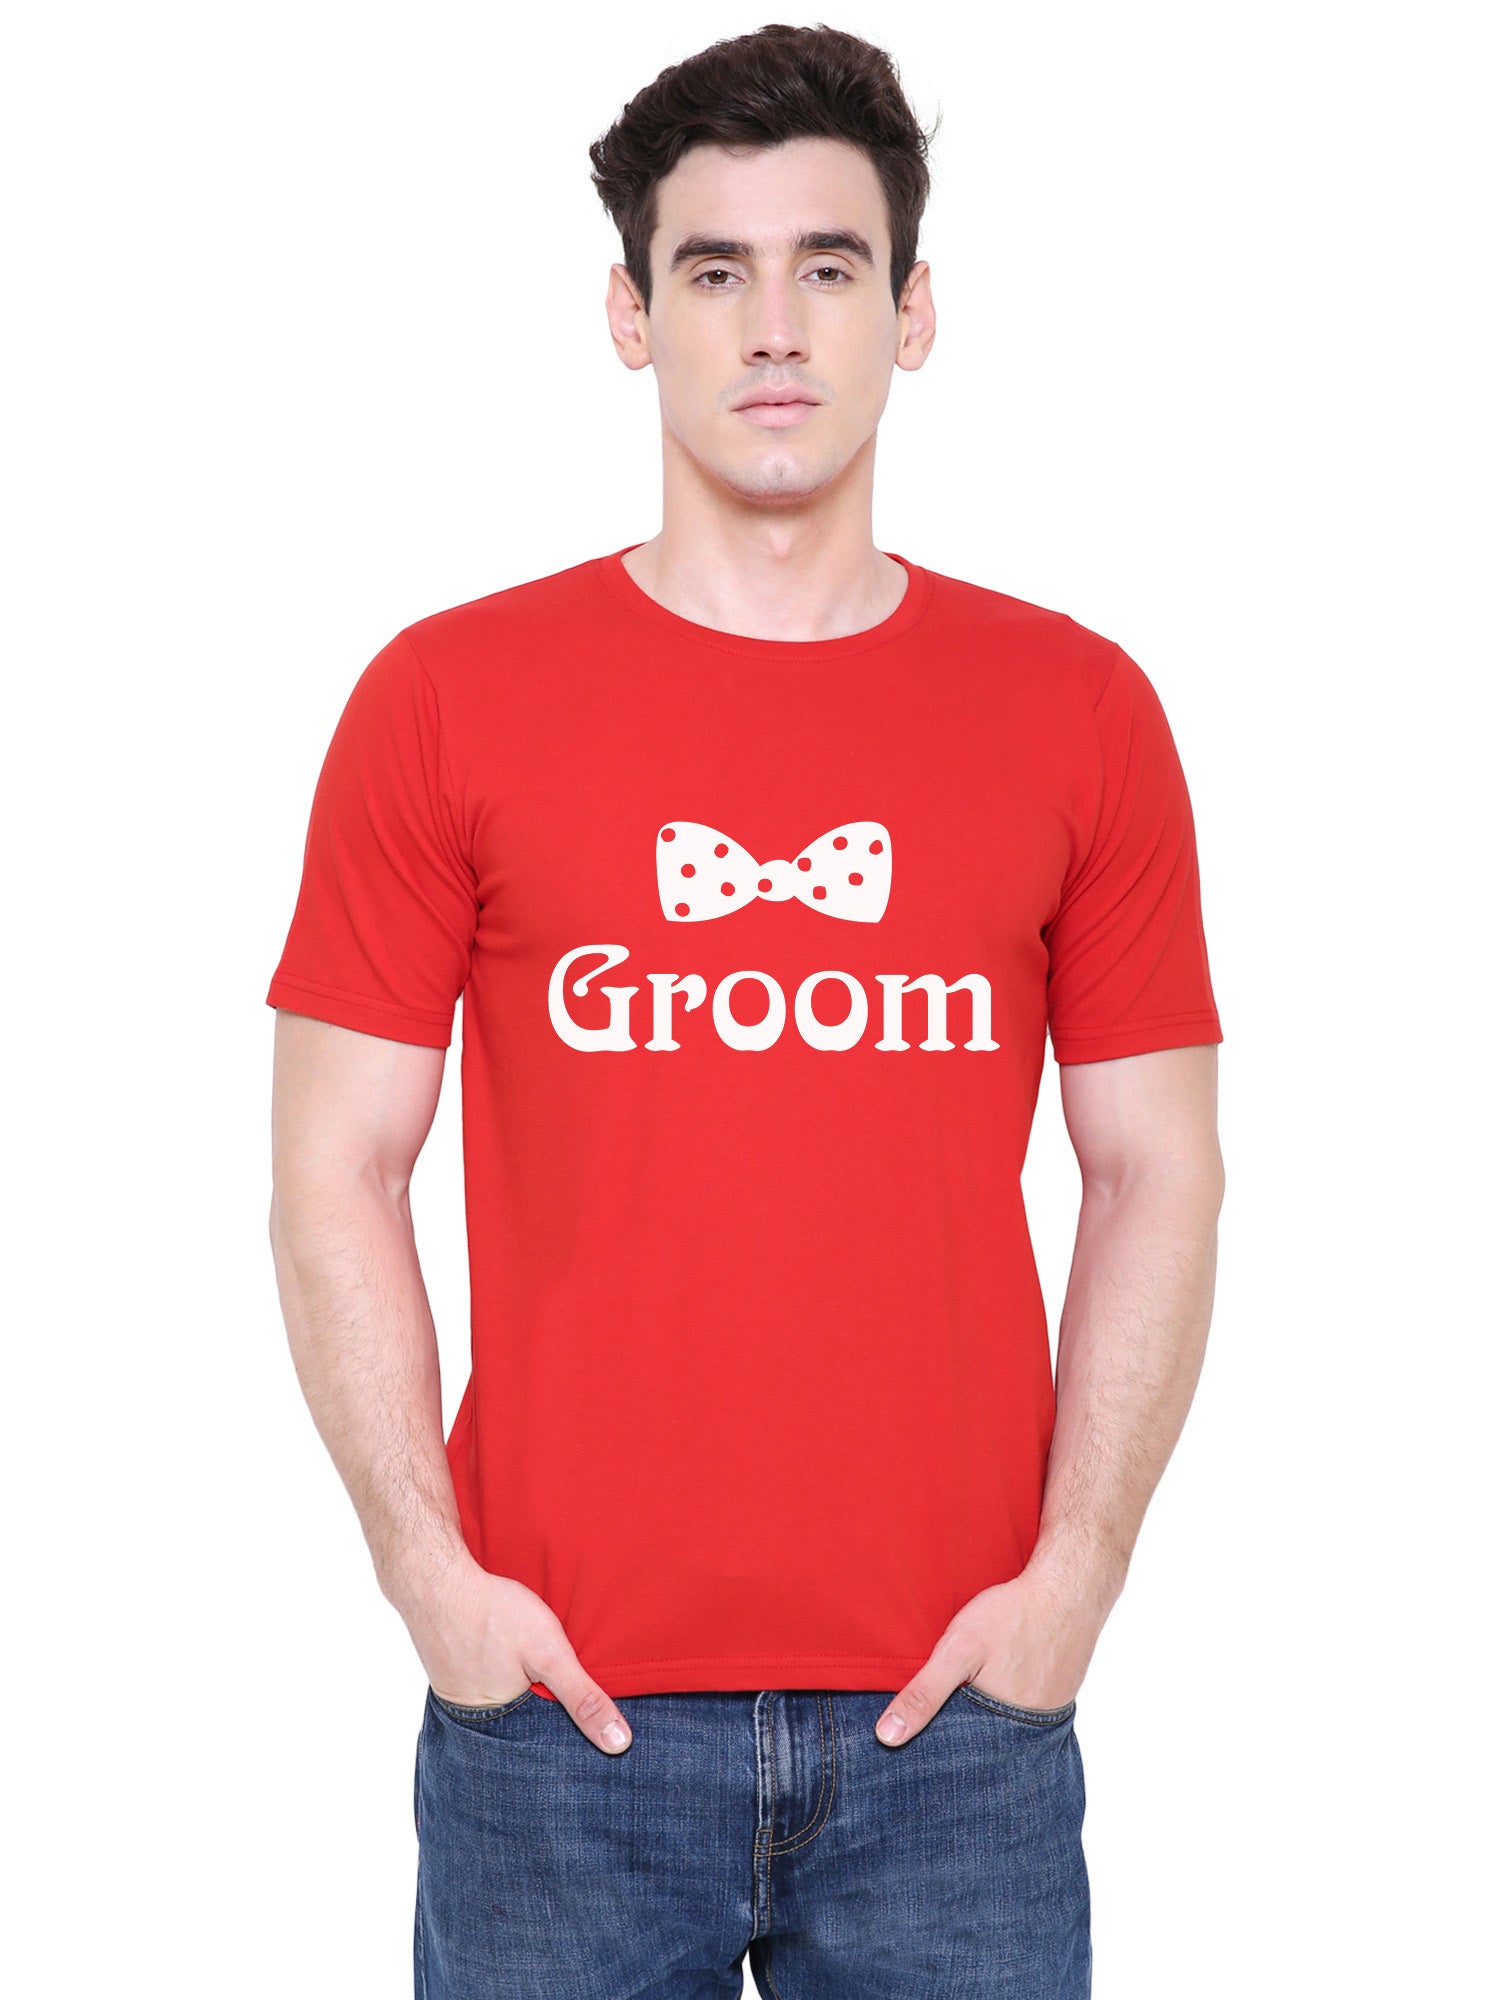 Bride Groom t shirt|wedding tshirts|Couple T shirts- Red 06